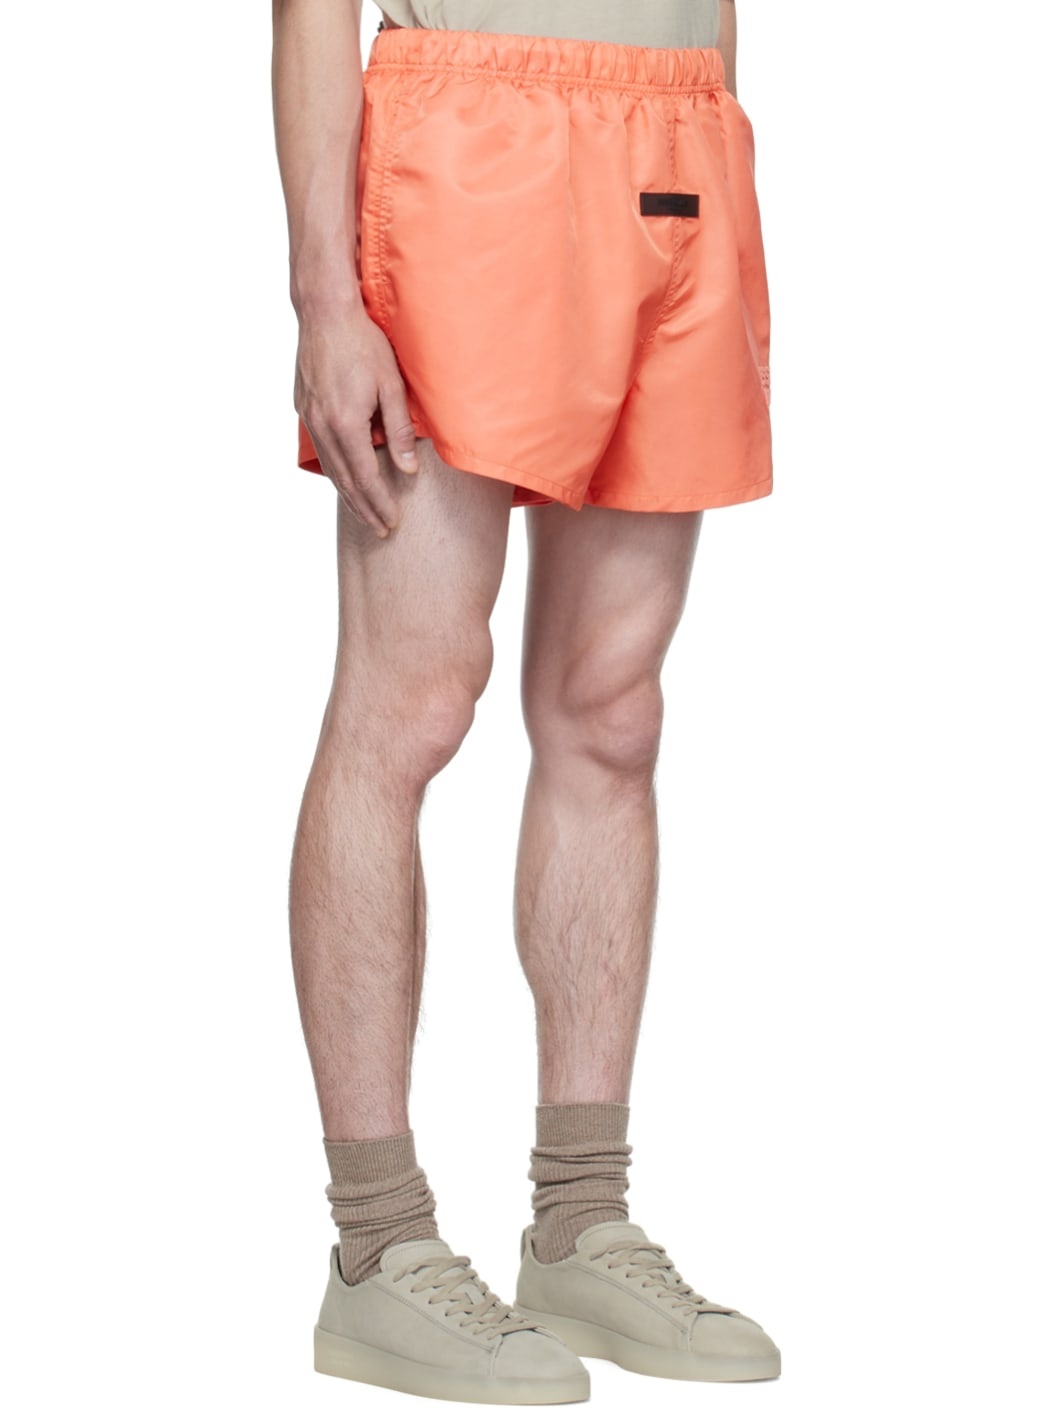 Pink Nylon Shorts - 2